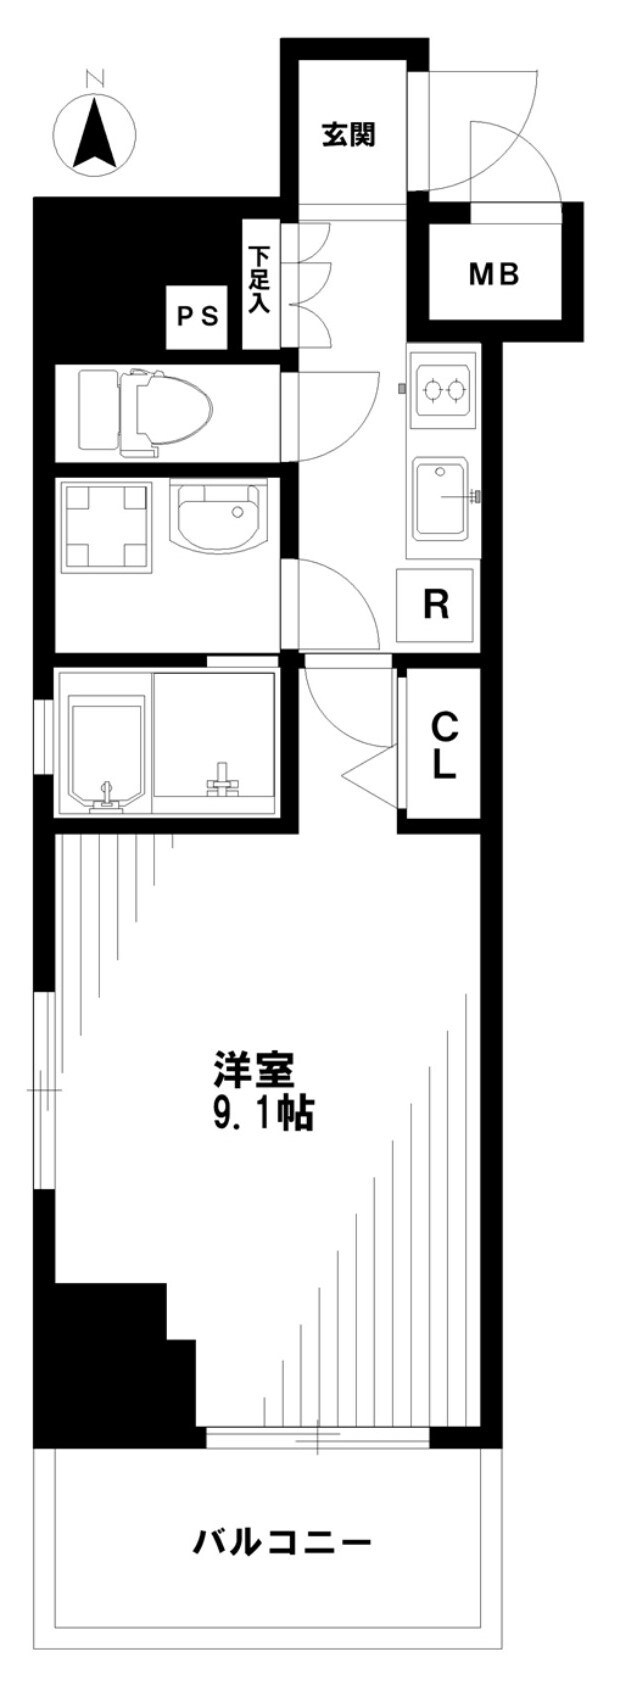 新宿私人公寓6楼-步行神乐阪